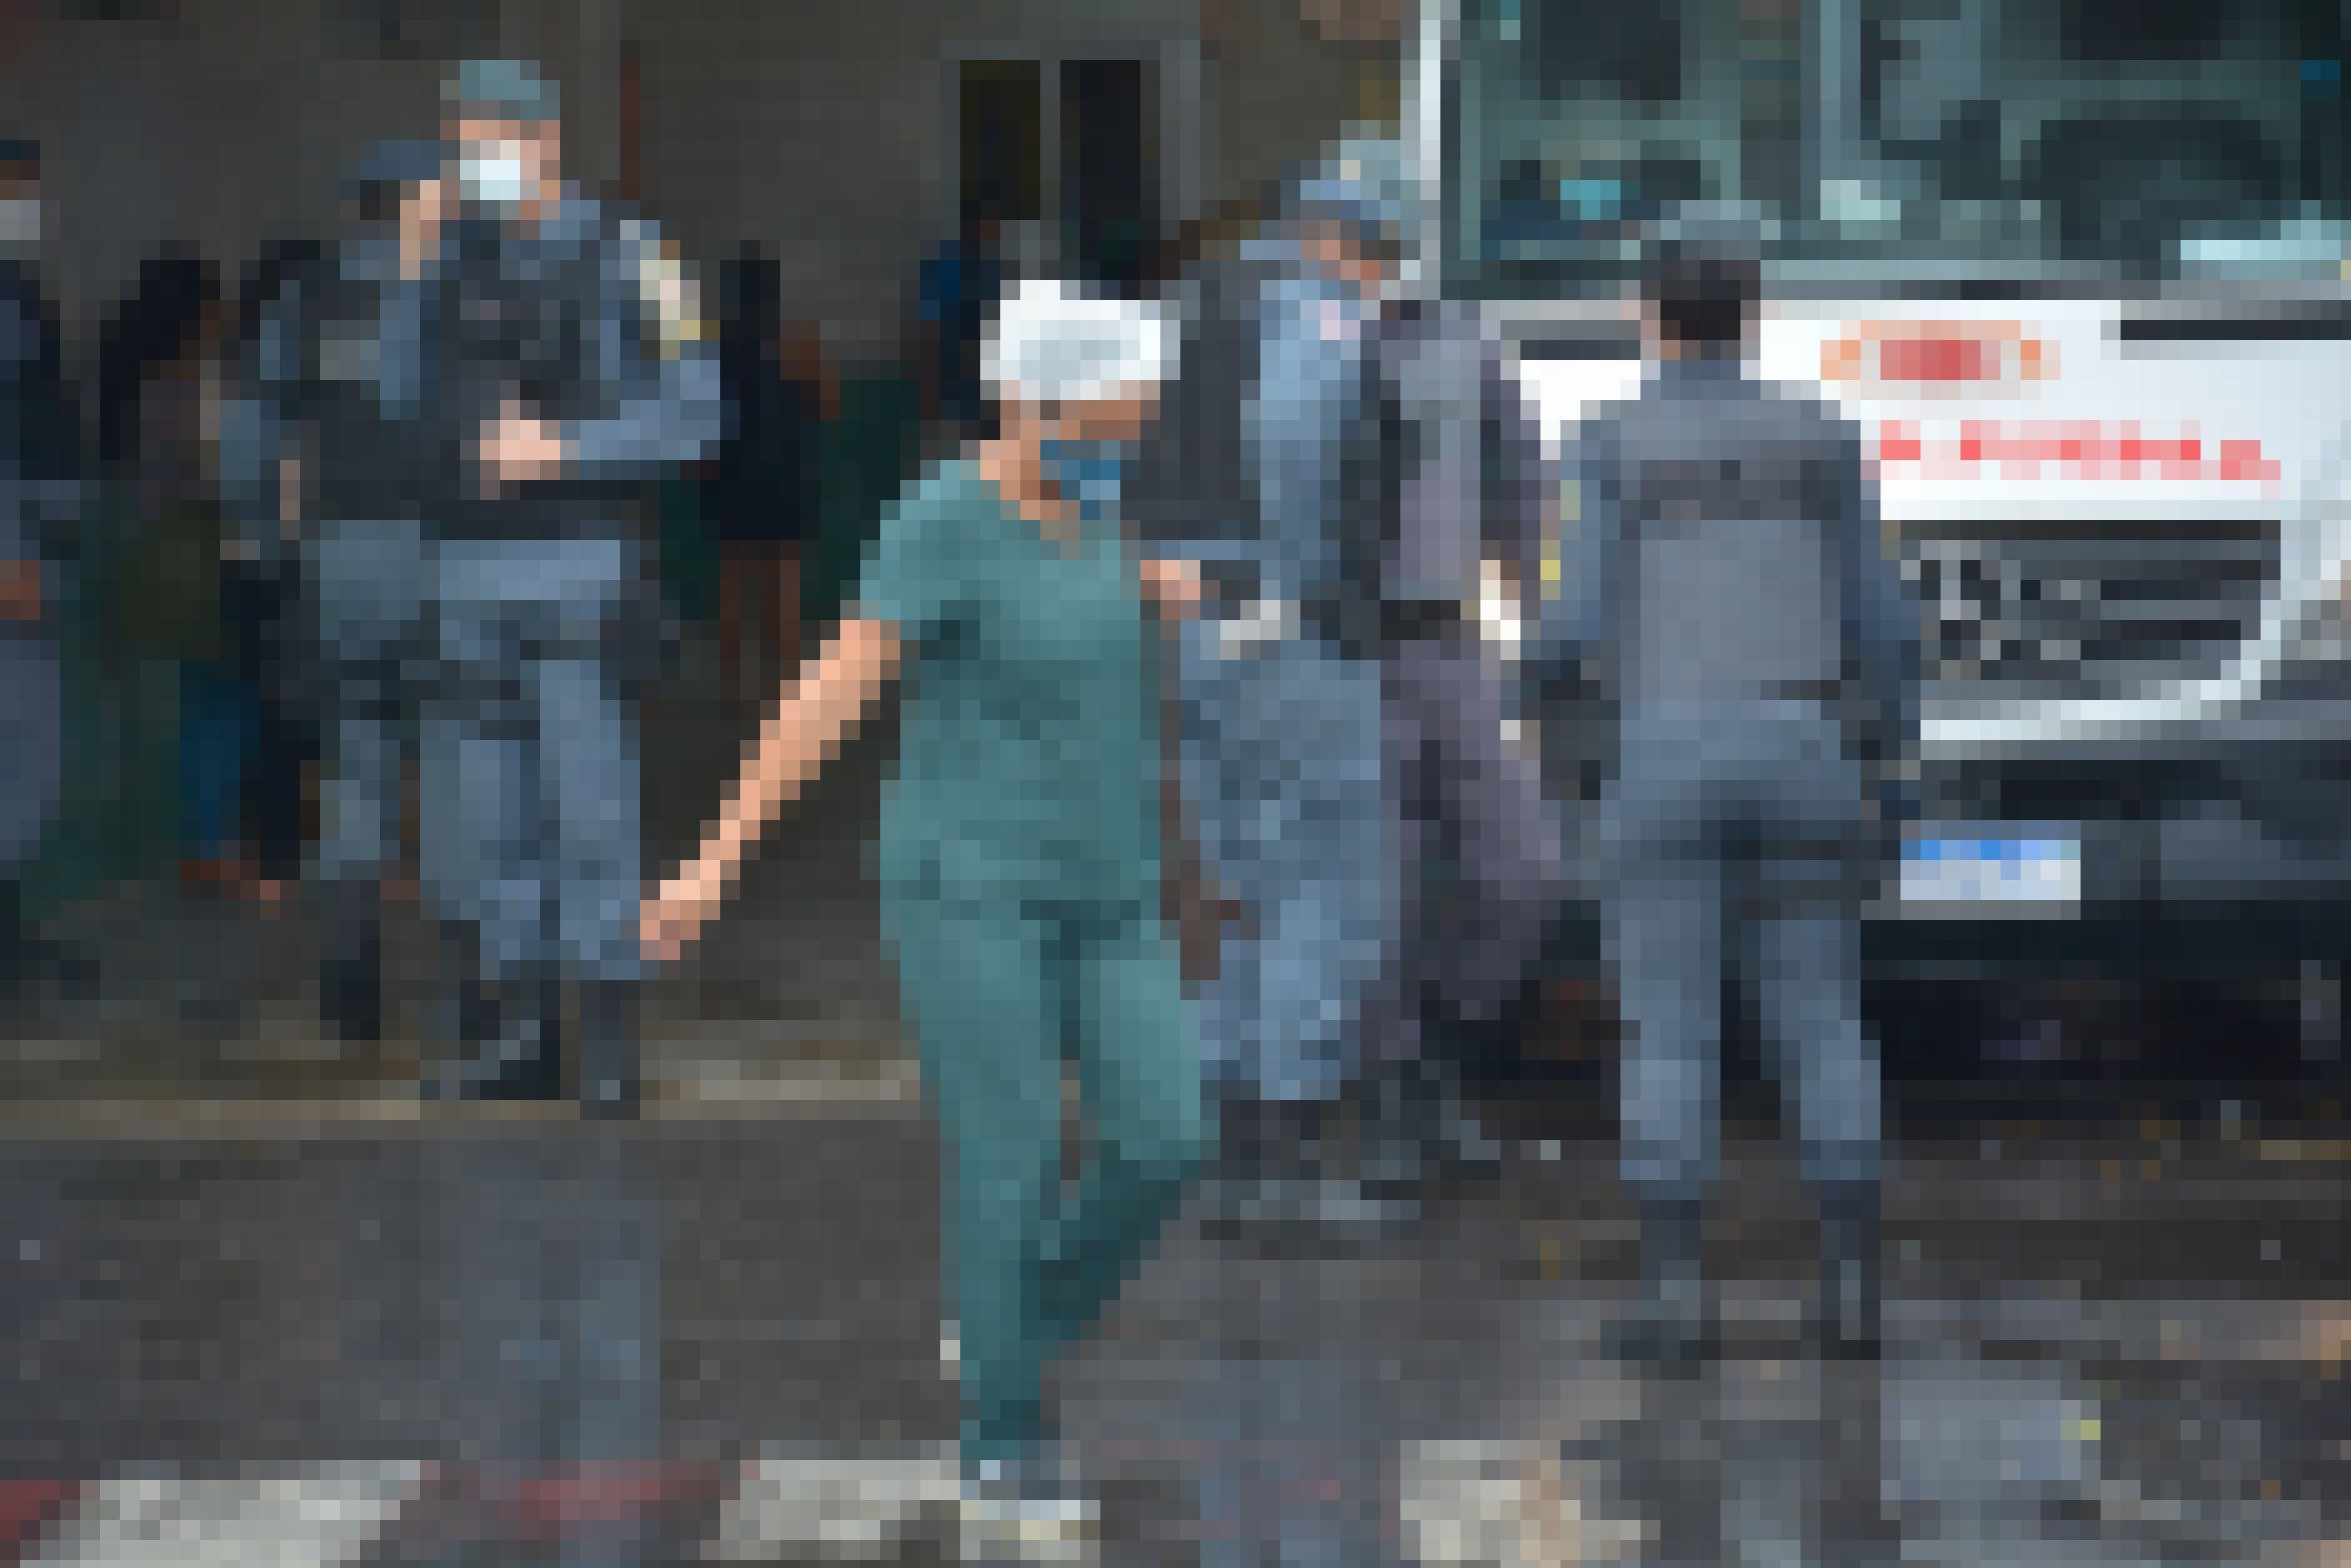 Vor dem Krankenhaus parkt ein Krankenwagen, der die mit Covid infizierten Patienten abtransportieren soll. Darum stehen fünf Personen der Militärpolizei und eine Krankenschwester läuft über den regennassen, spiegelnden Asphalt.